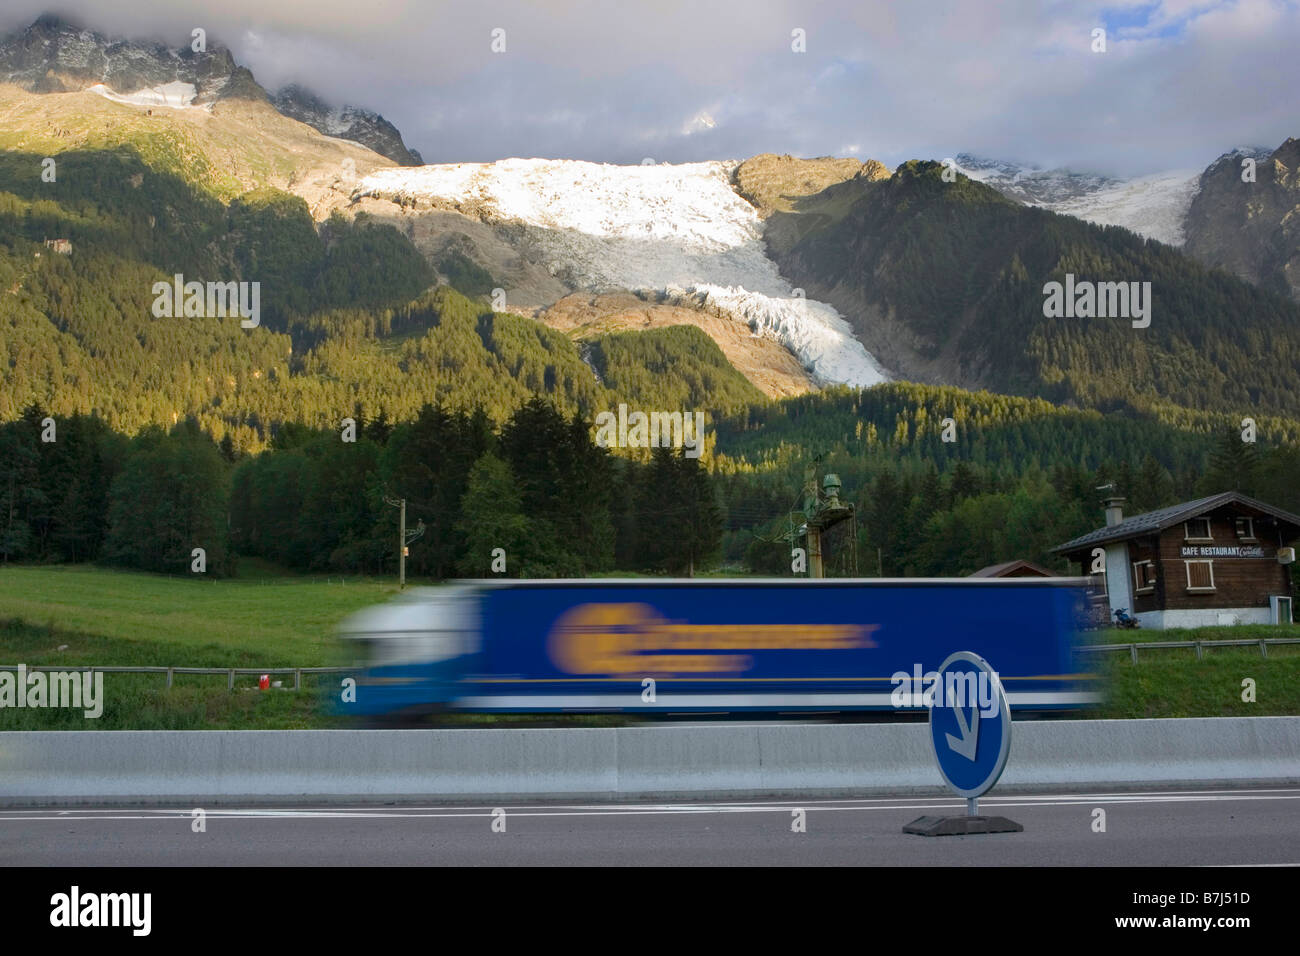 Le trafic de camions est un problème très sensible dans les vallées des Alpes, le Glacier de Taconnaz, Chamonix, France Banque D'Images